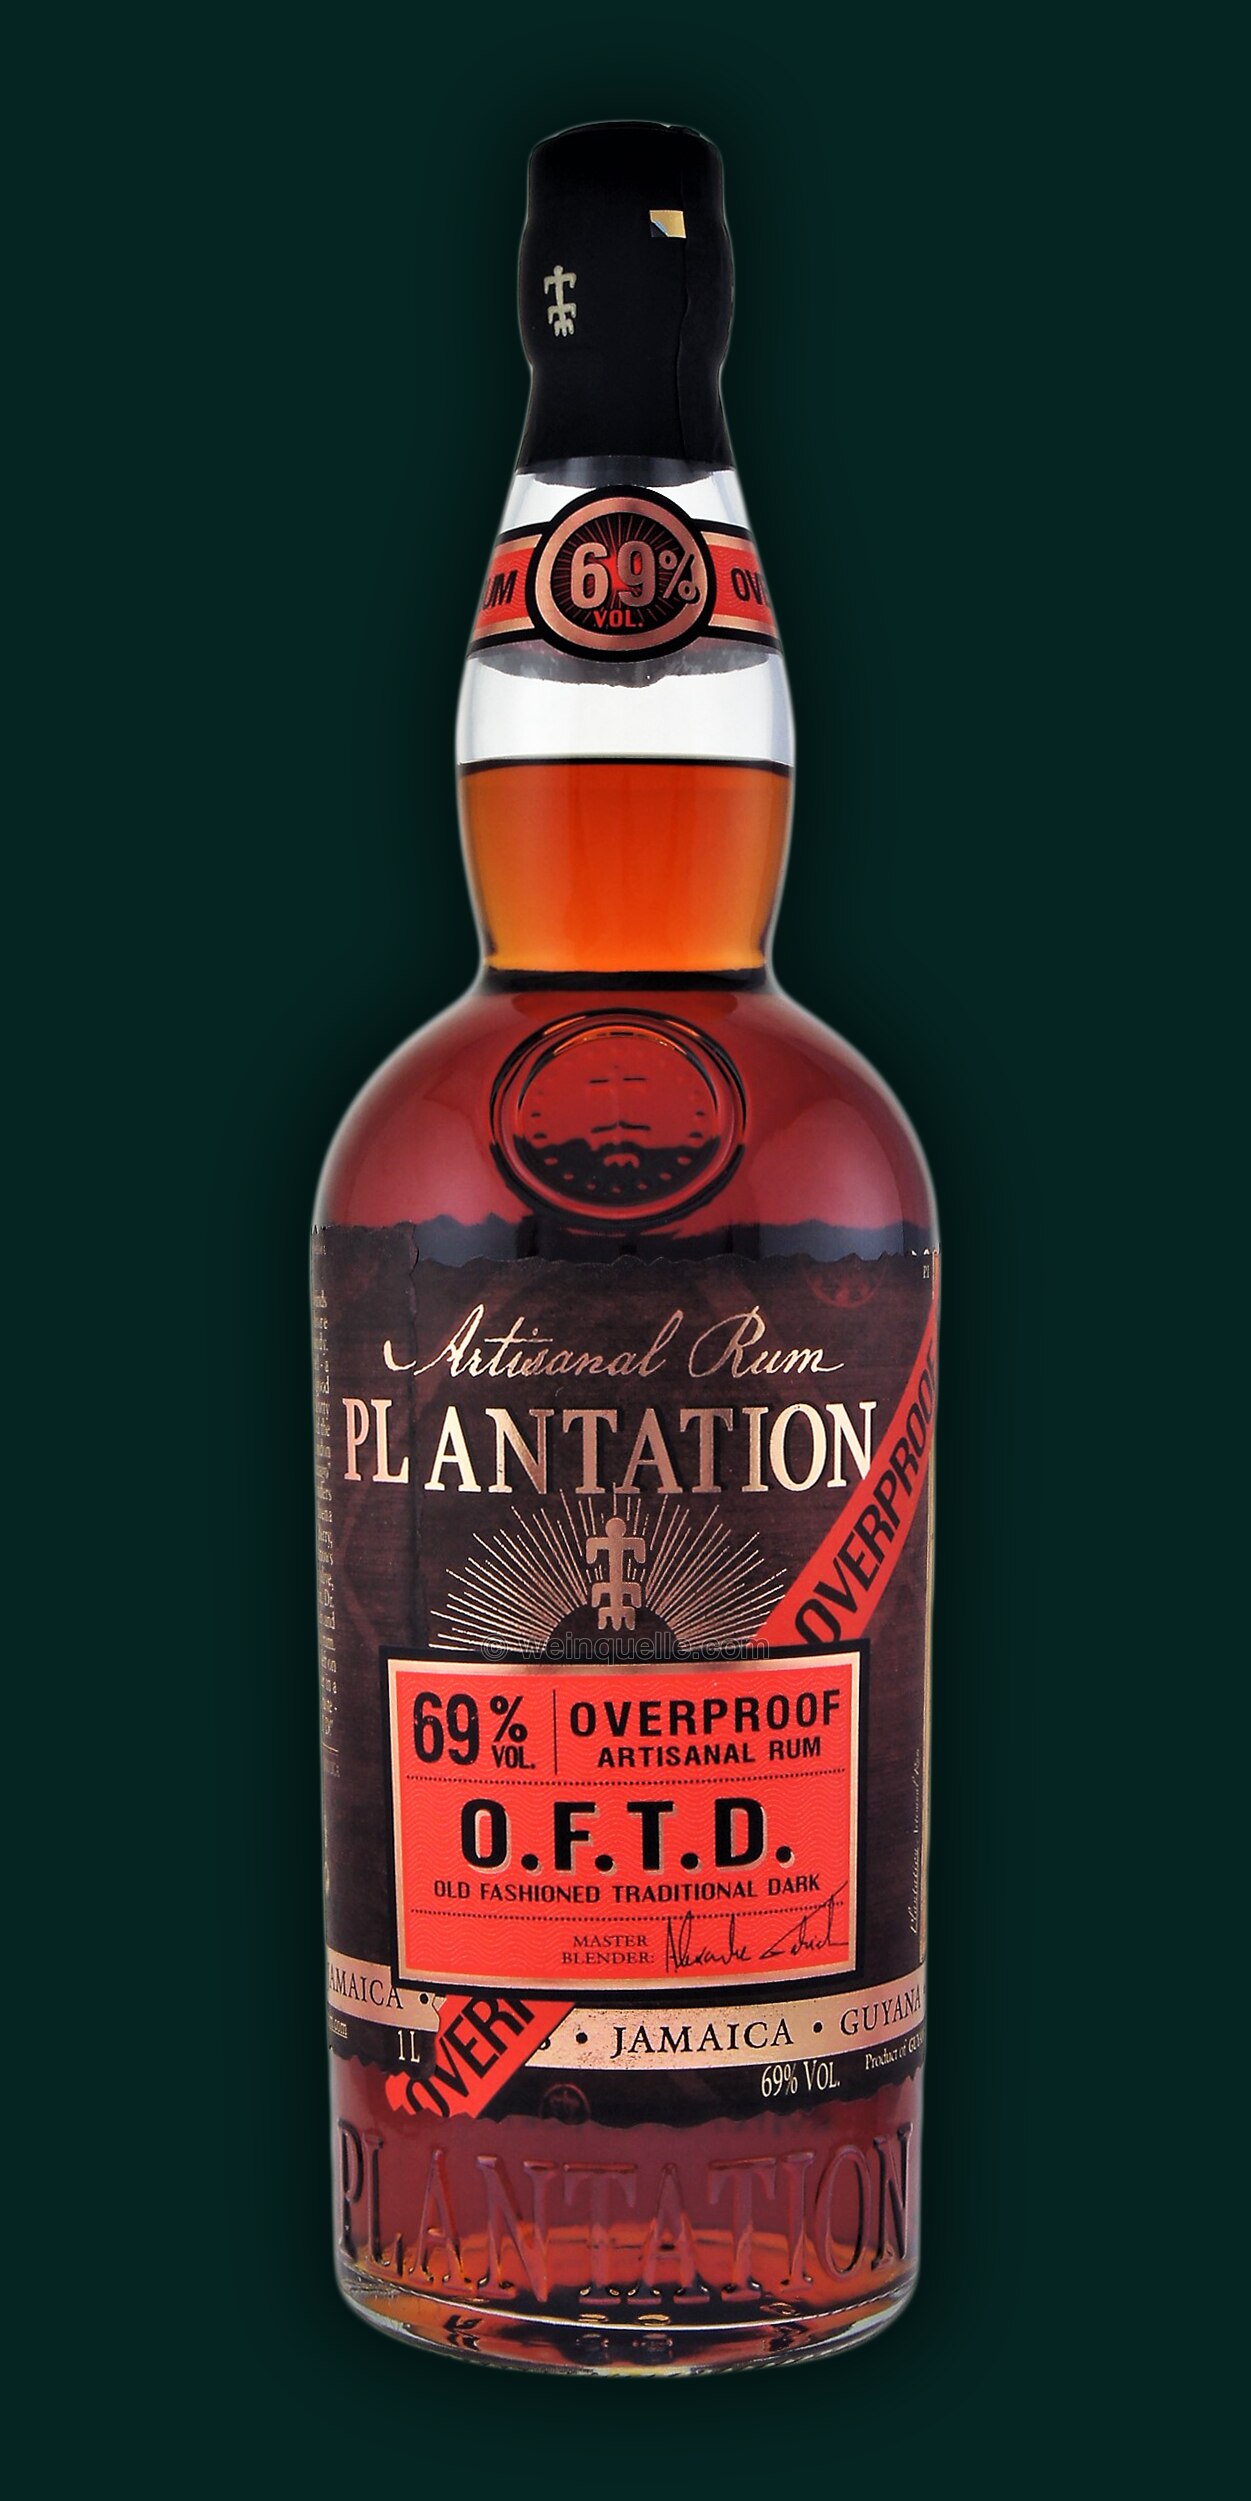 € Plantation Overproof 1,0 Dark Lühmann Liter, O.F.T.D. 34,50 Rum - 69% Weinquelle